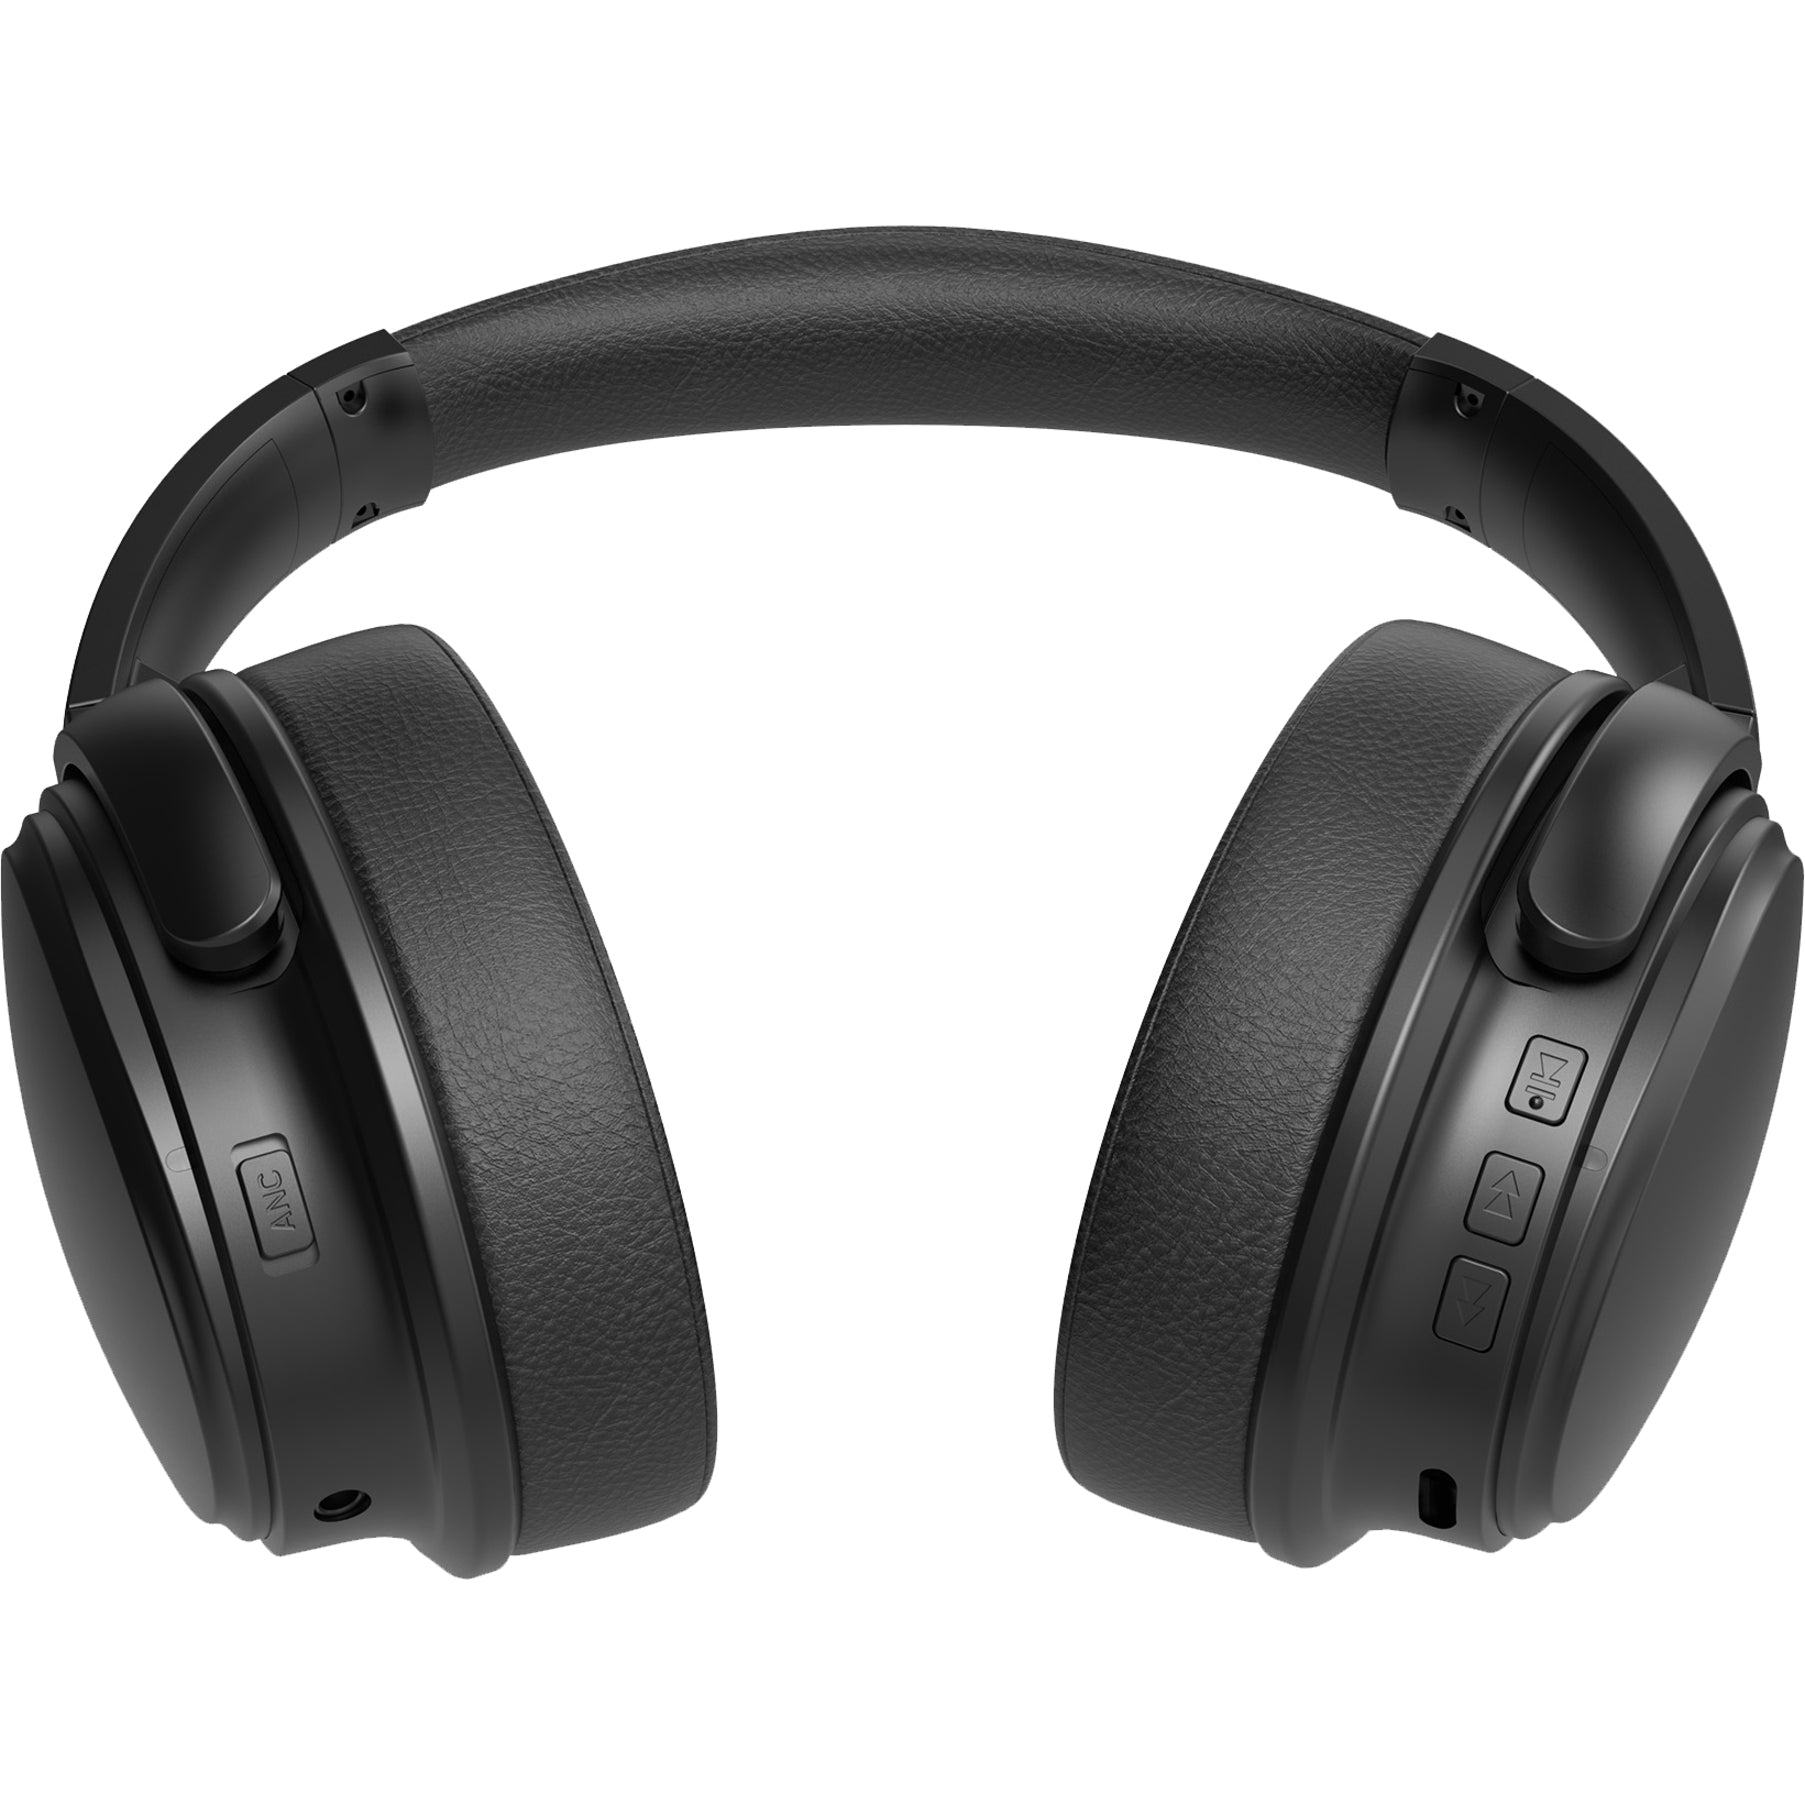 مورفيوس ٣٦٠ HP٩٣٥٠٢ KRAVE سماعات لاسلكية نشطة للتقليل من الضوضاء ، فوق الرأس ، نوع USB C ، مقبس Mini-phone (٣.٥ ملم) ، أسود.